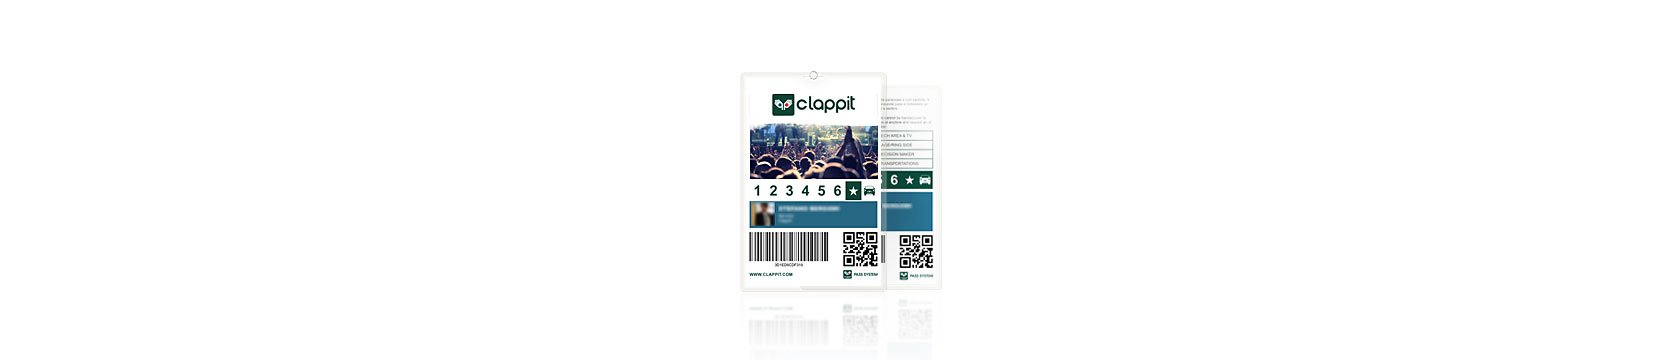 Clappit-Full-Ticketing-Pass-Crew-Venue-Grafica-Personalizzata-Brand-Evento-A4-Top-001